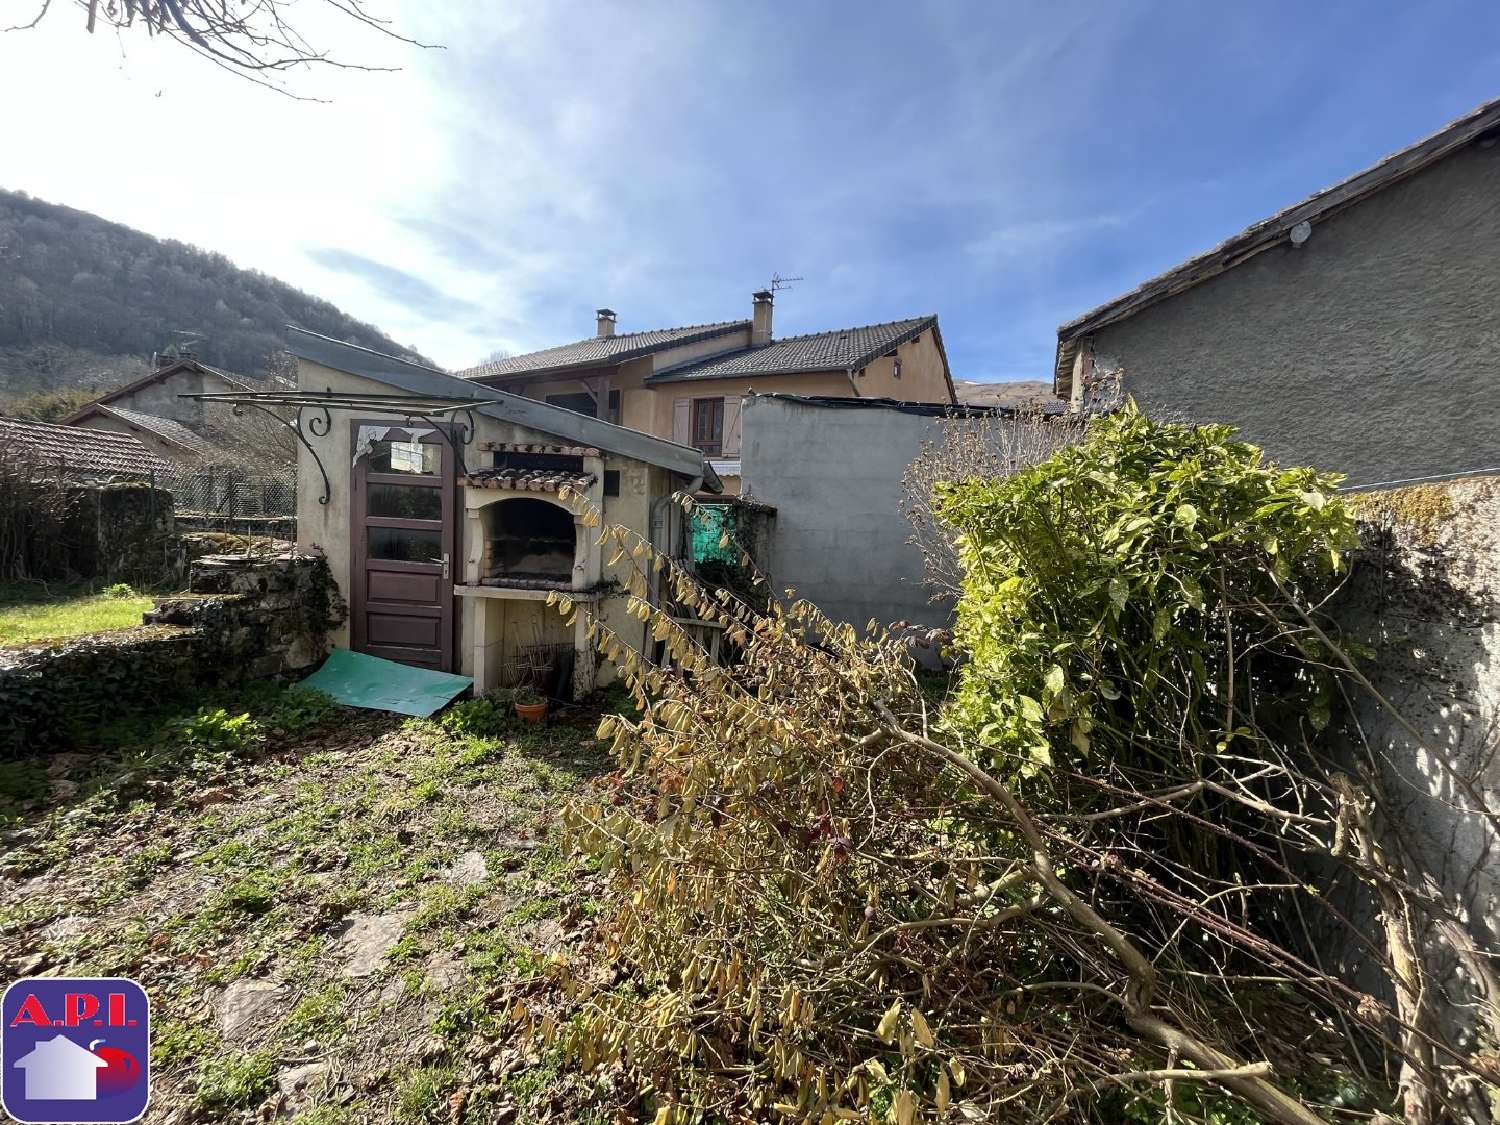  à vendre maison Tarascon-sur-Ariège Ariège 2